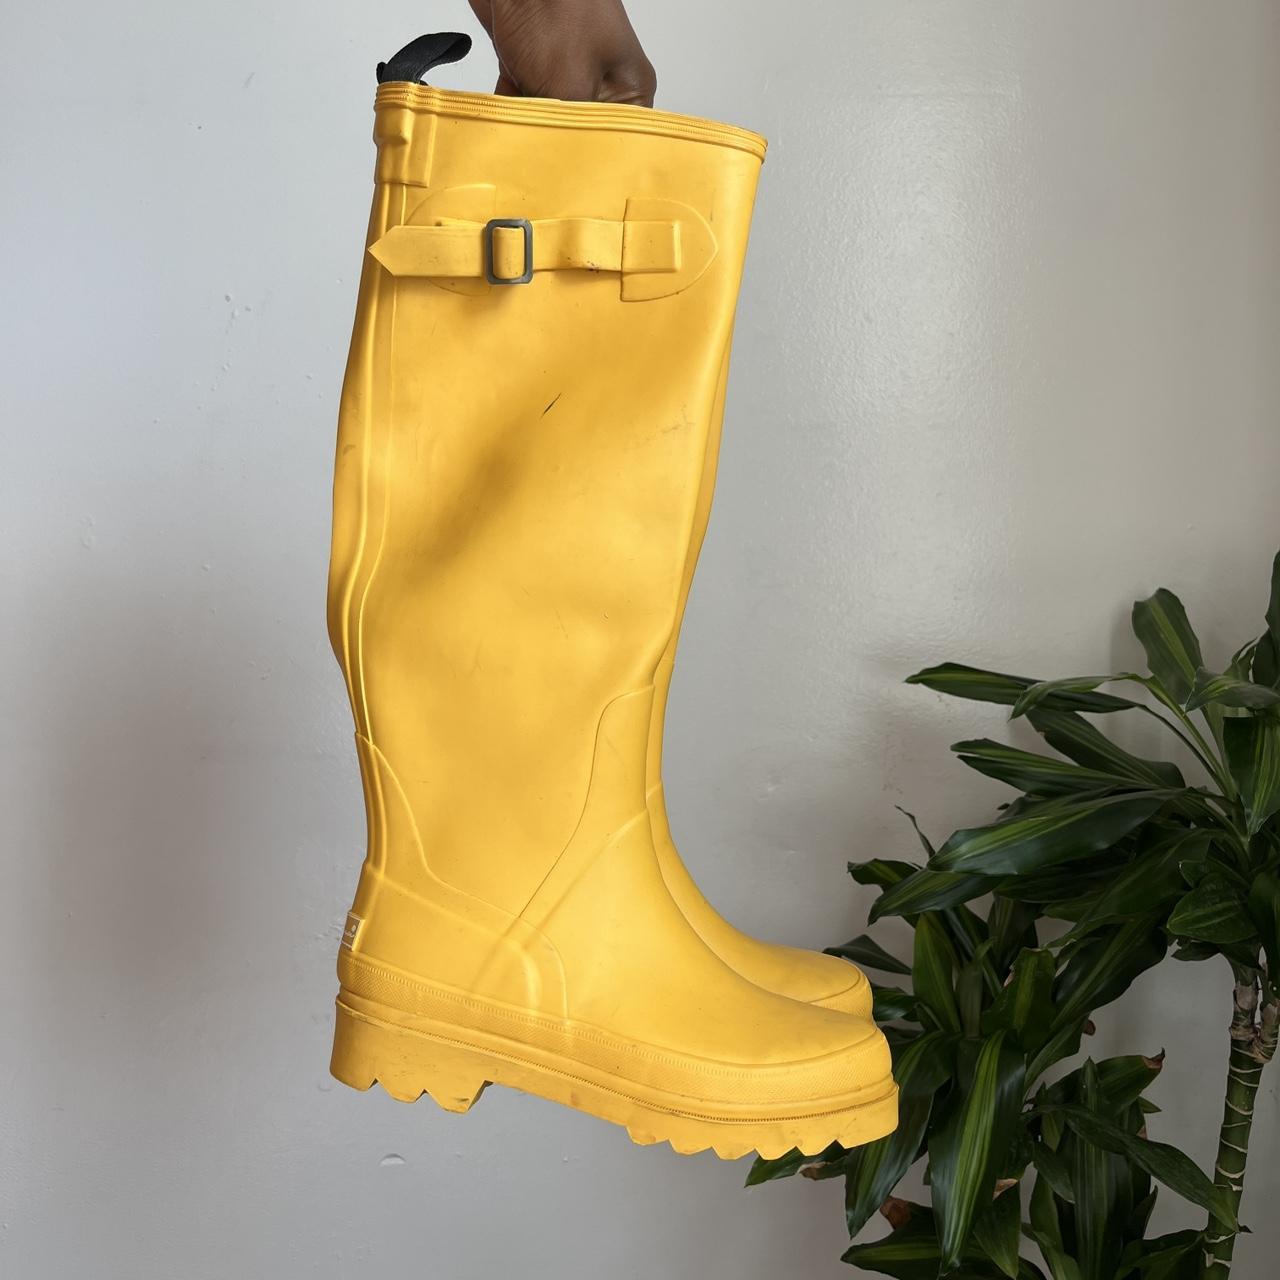 Eddie Bauer knee high rain boots Size: 6M Brand:... - Depop